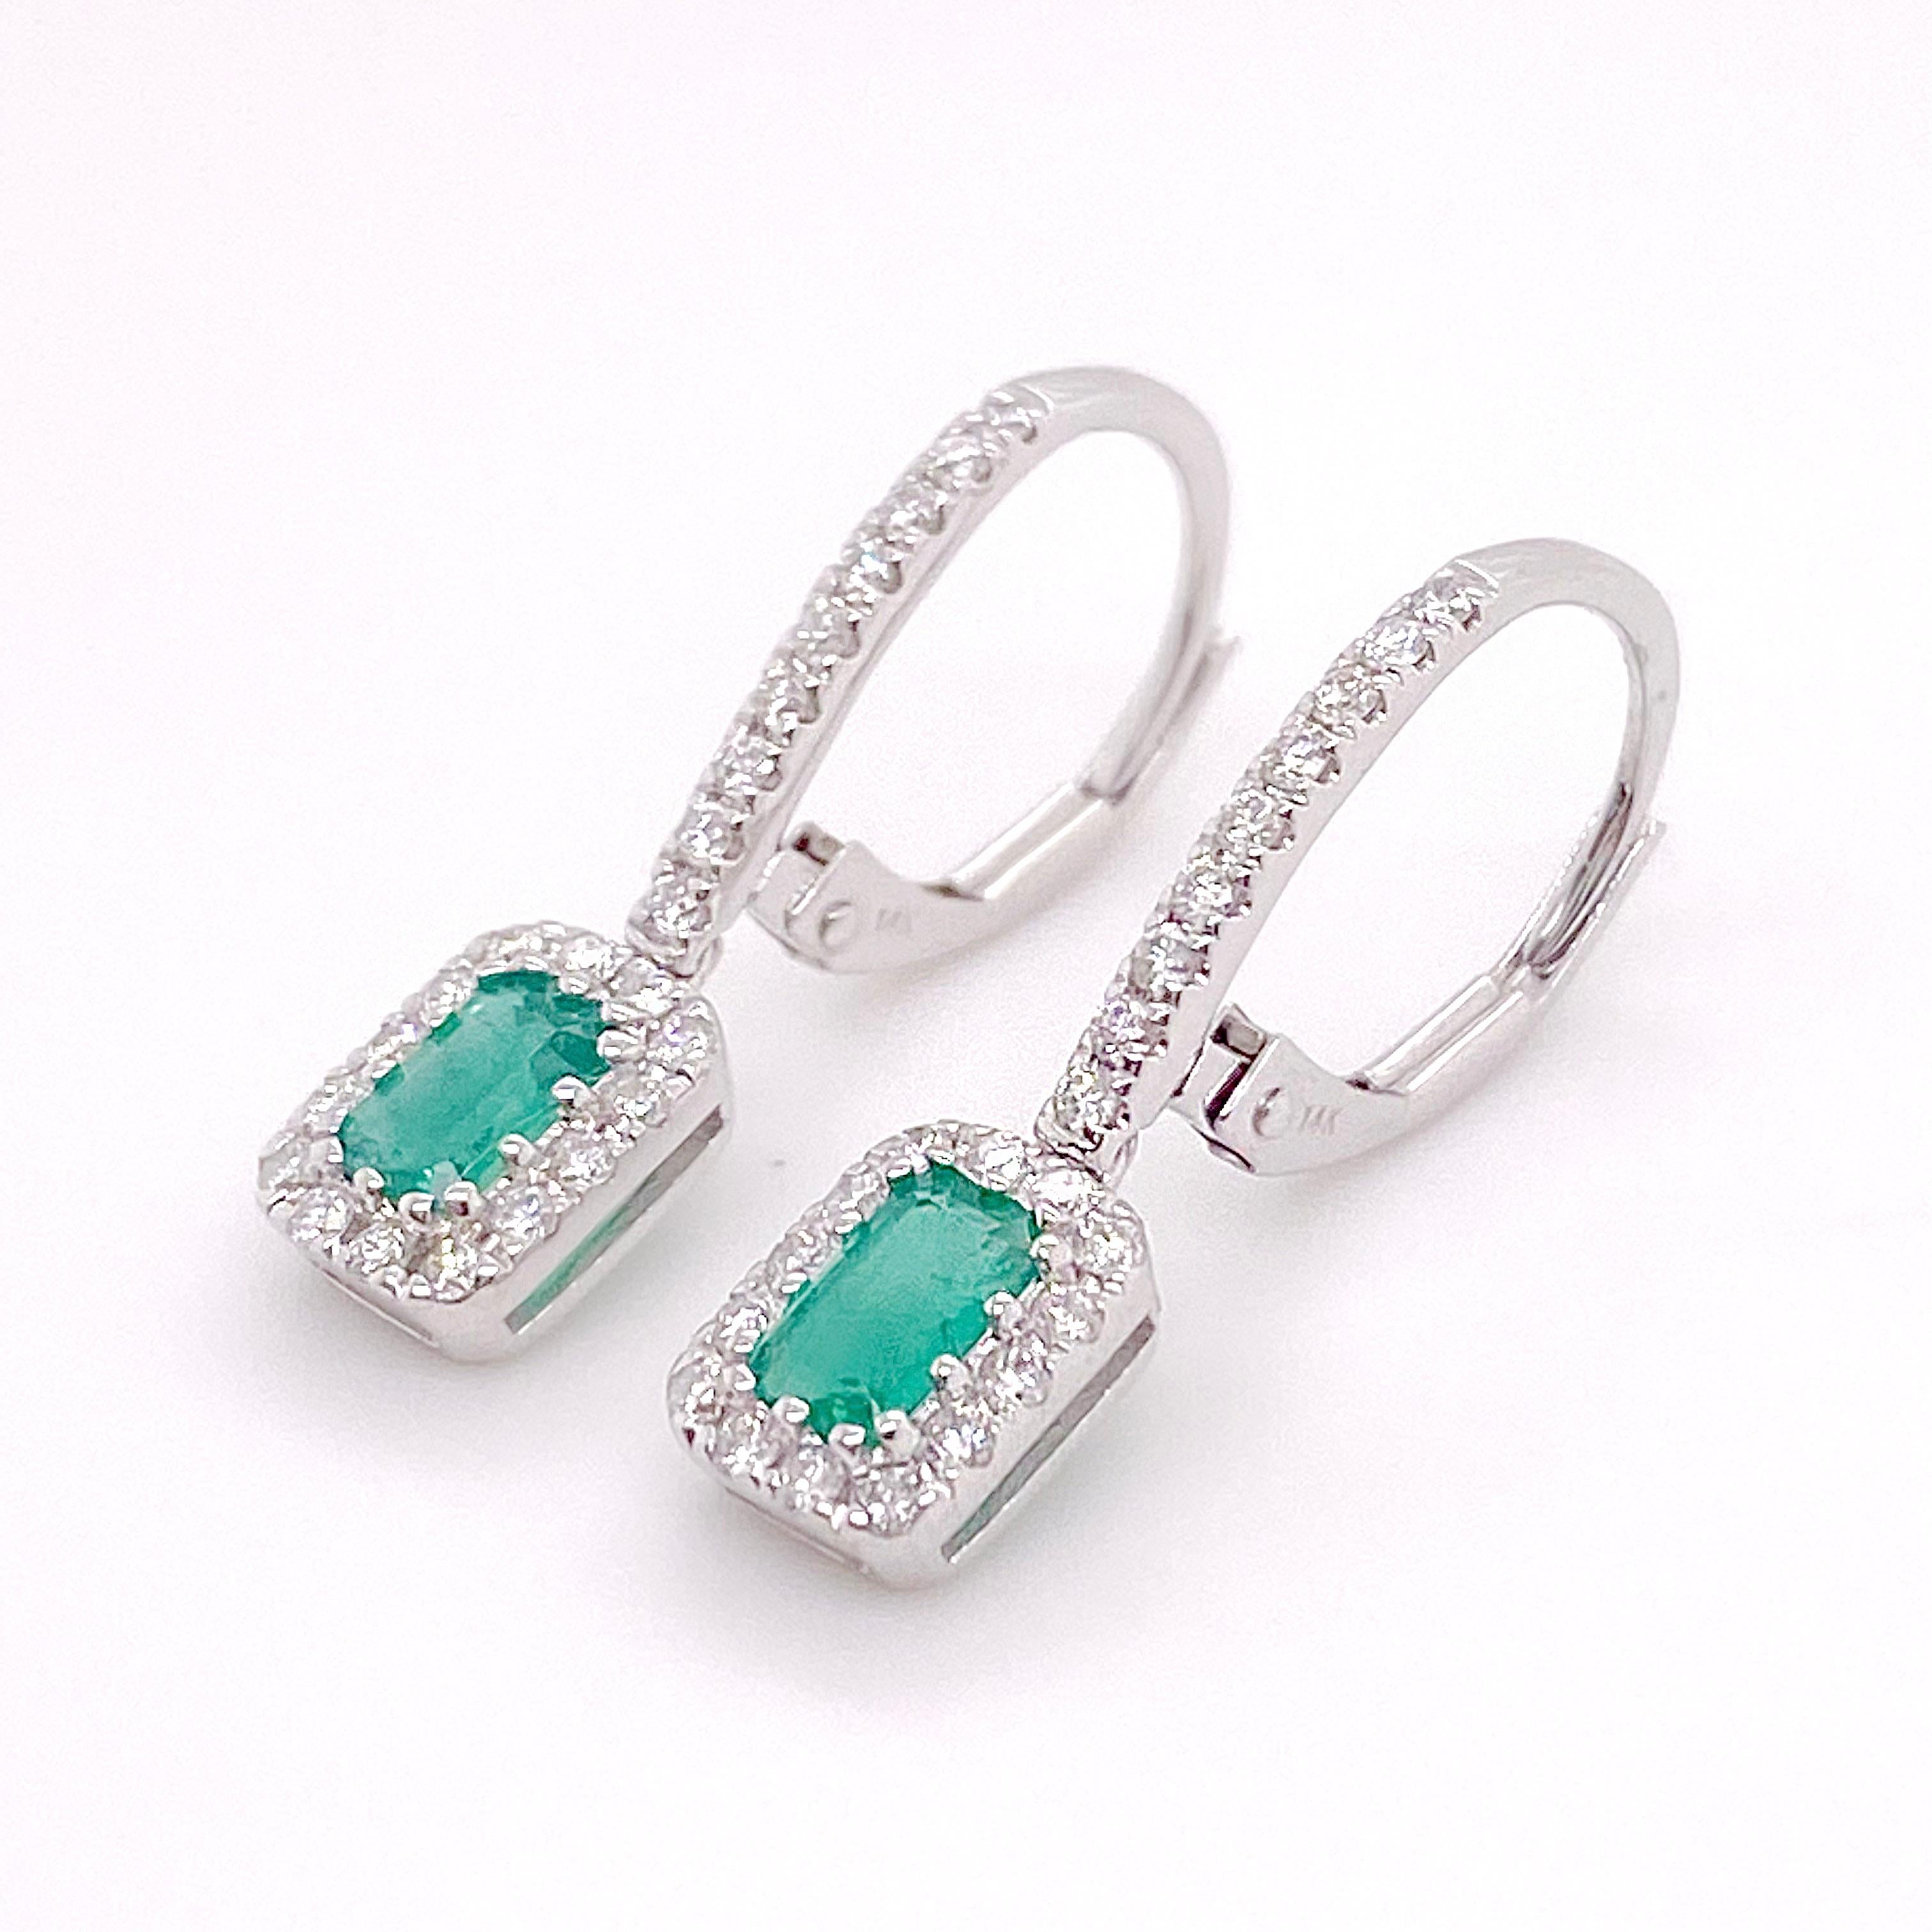 Diese wunderschönen Ohrringe aus 14 Karat Weißgold mit Smaragden und Diamanten sind perfekt für einen eleganteren Anlass oder eine Hochzeit! Der grüne Smaragd im Smaragdschliff ist wunderschön in der Mitte von 24 Diamanten gefasst und die Ohrringe